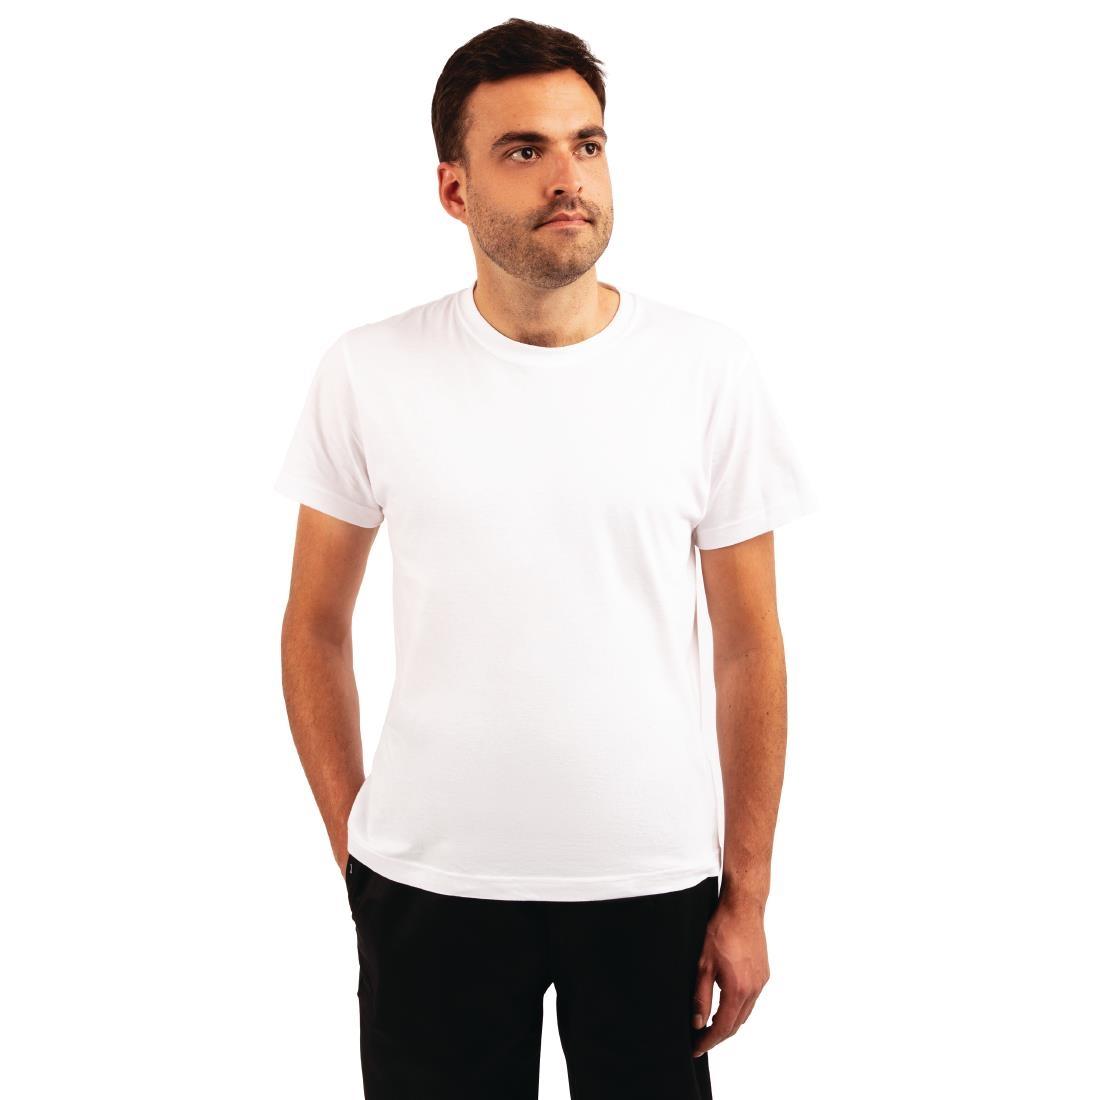 Unisex Chef T-Shirt White 4XL - A103-4XL  - 1